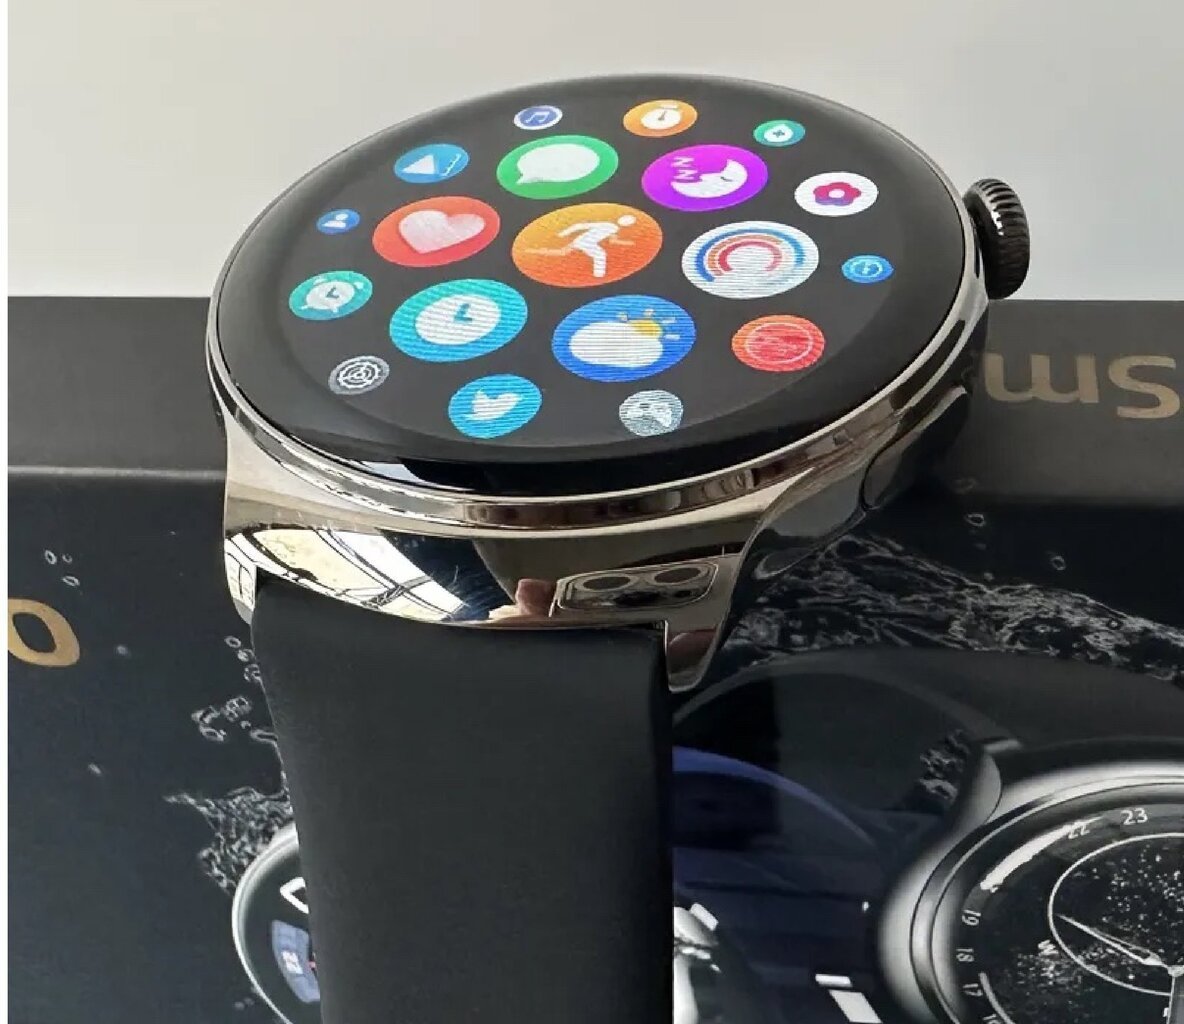 ZD Z93 Pro Smart Black цена и информация | Išmanieji laikrodžiai (smartwatch) | pigu.lt